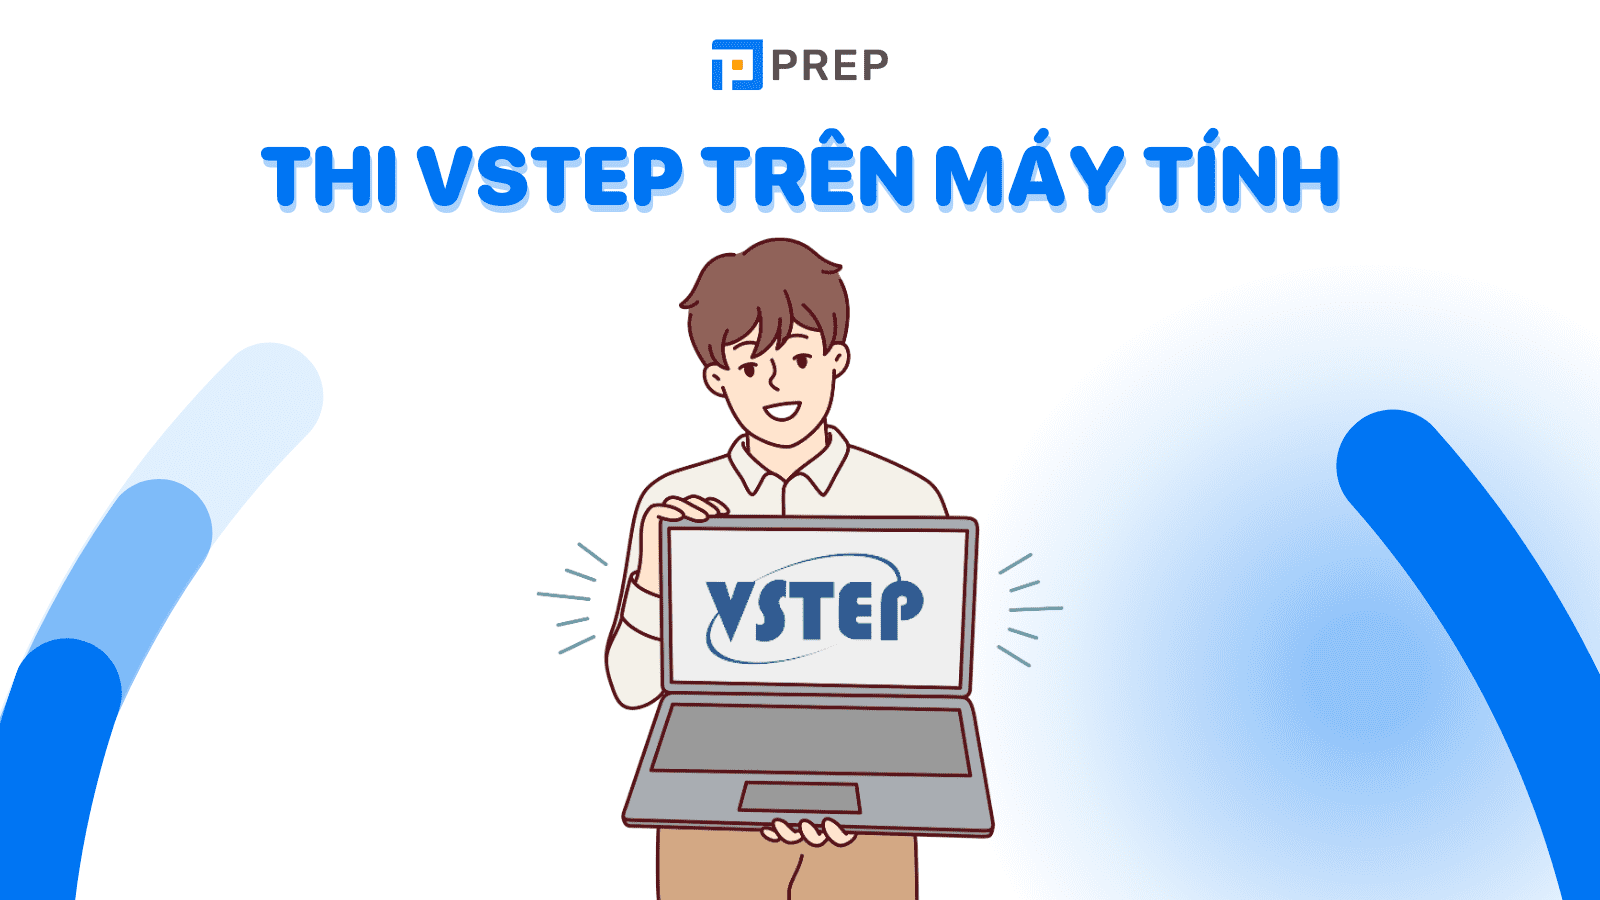 Thi VSTEP trên máy tính: Nên thi VSTEP trên máy tính hay trên giấy?